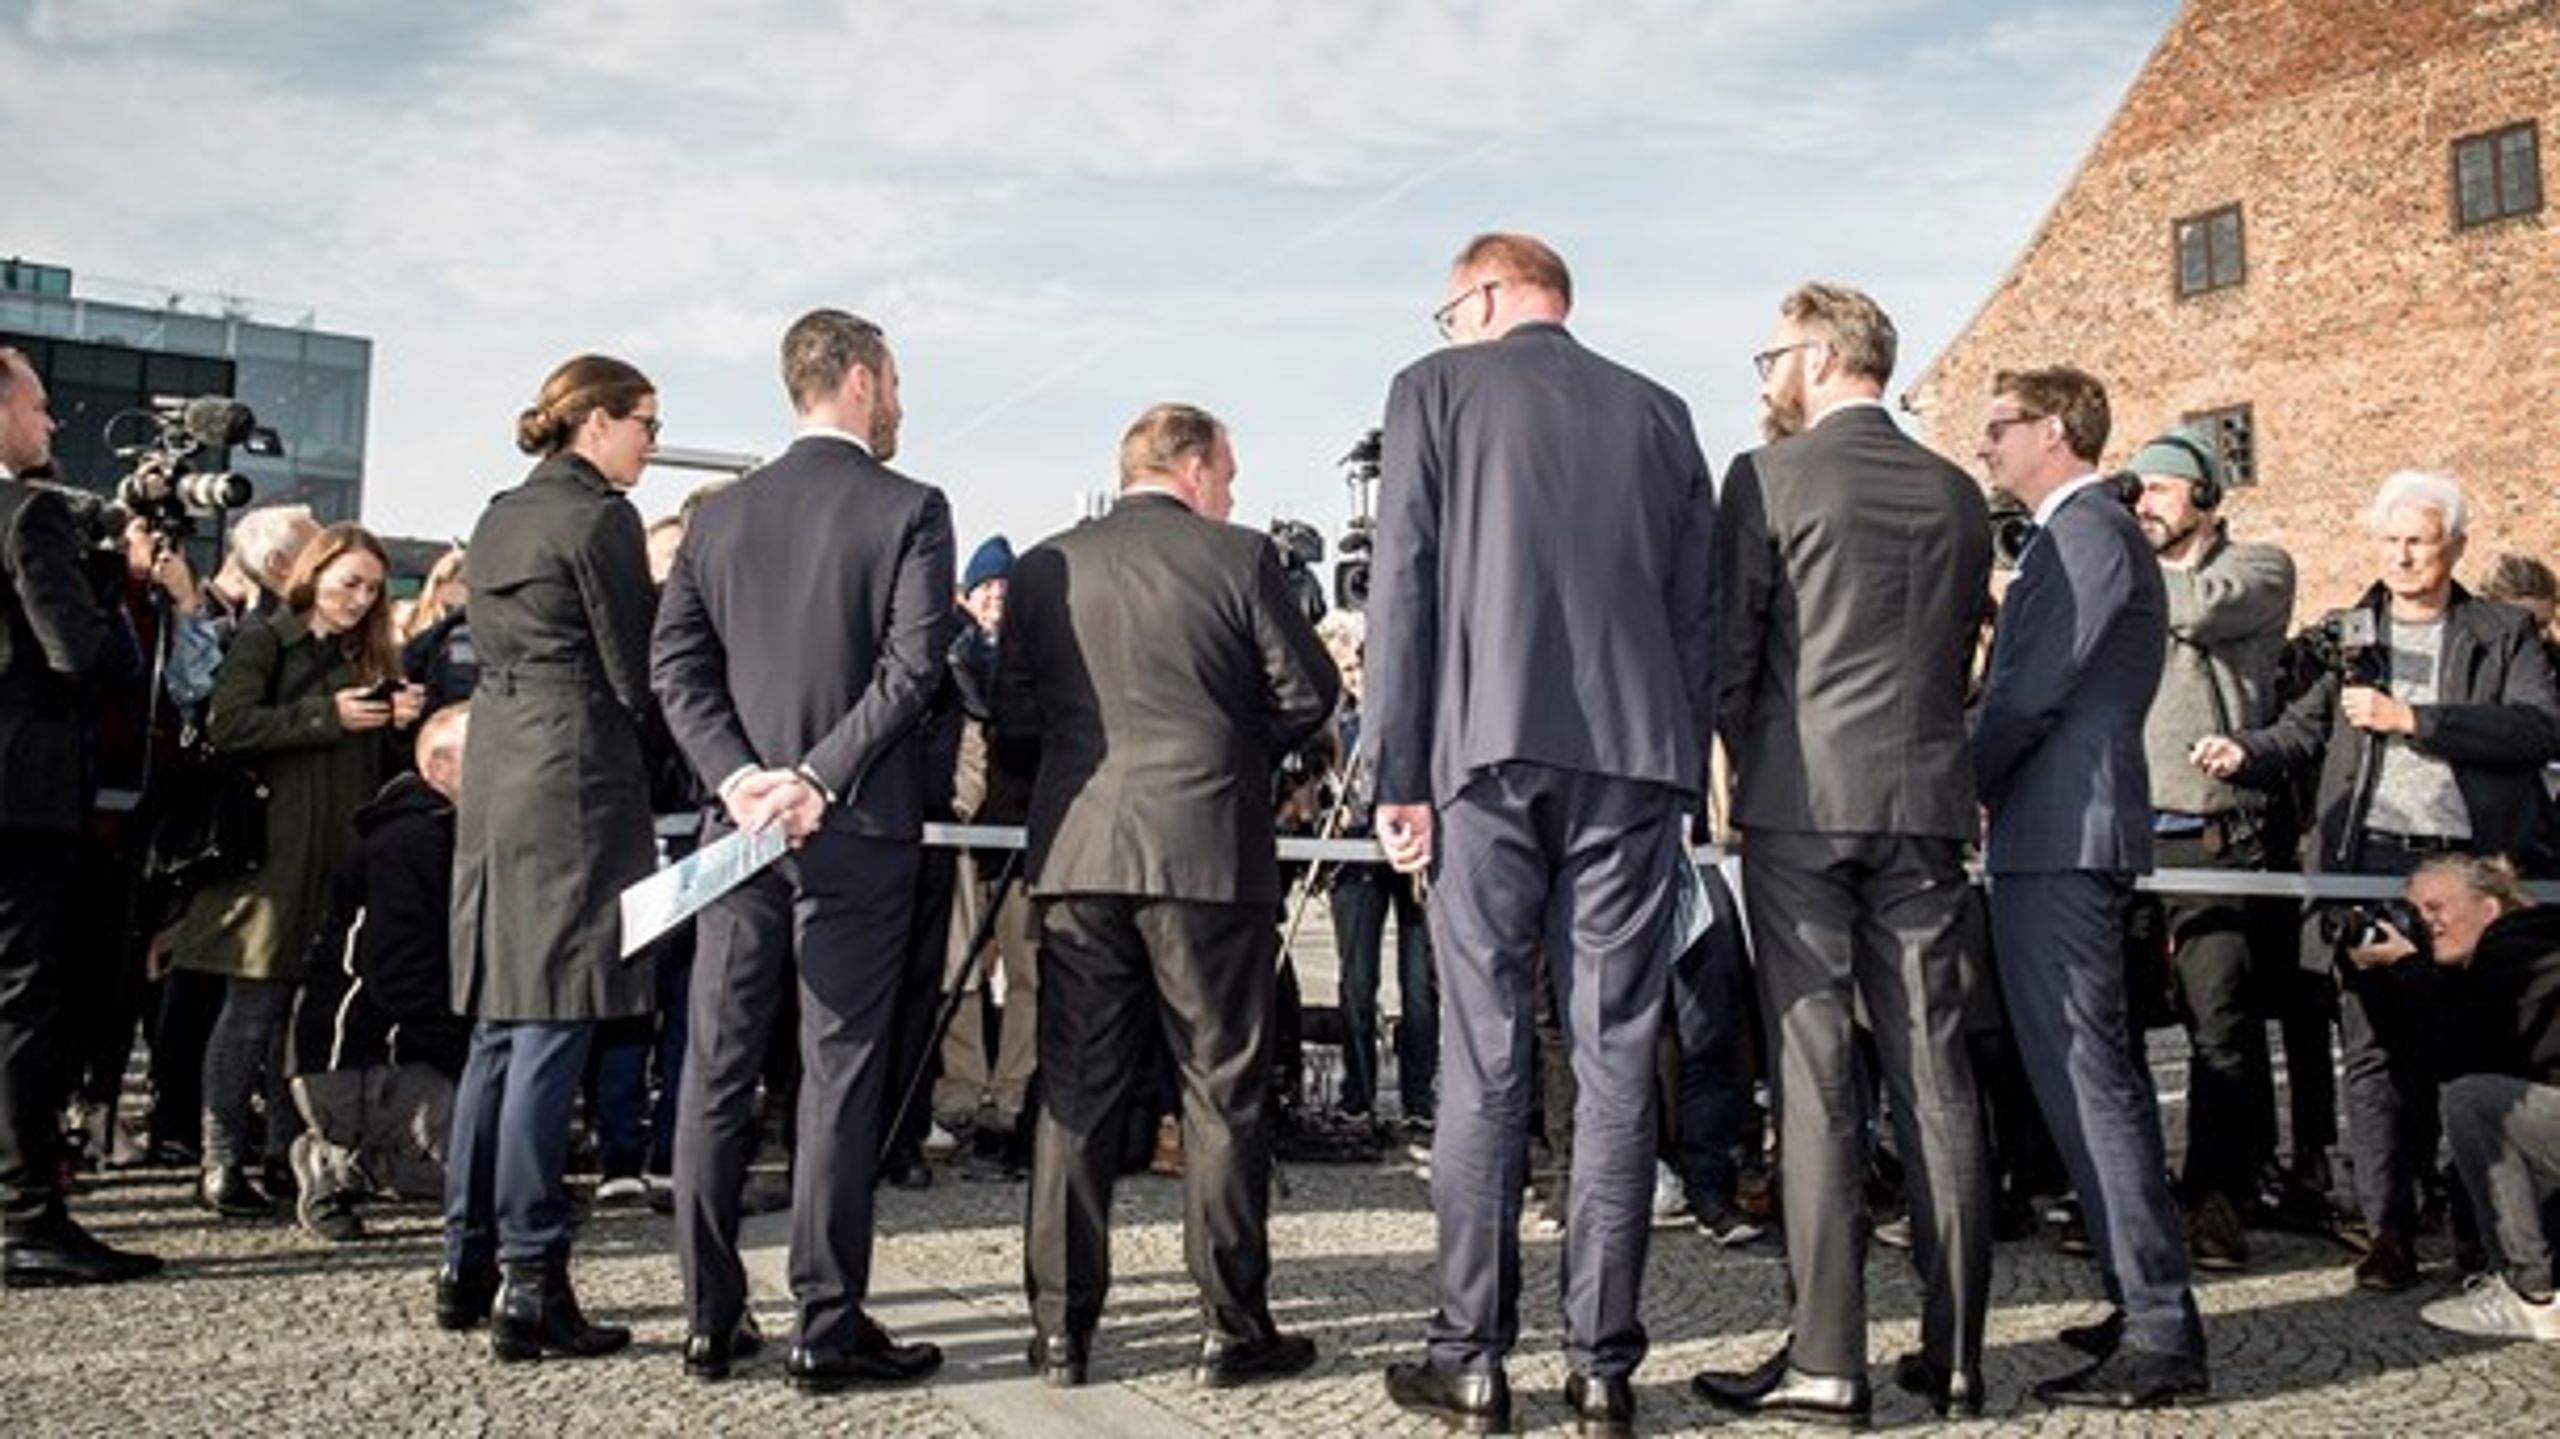 Seks ministre var med til at præsentere regeringens klimaudspil i København tirsdag.